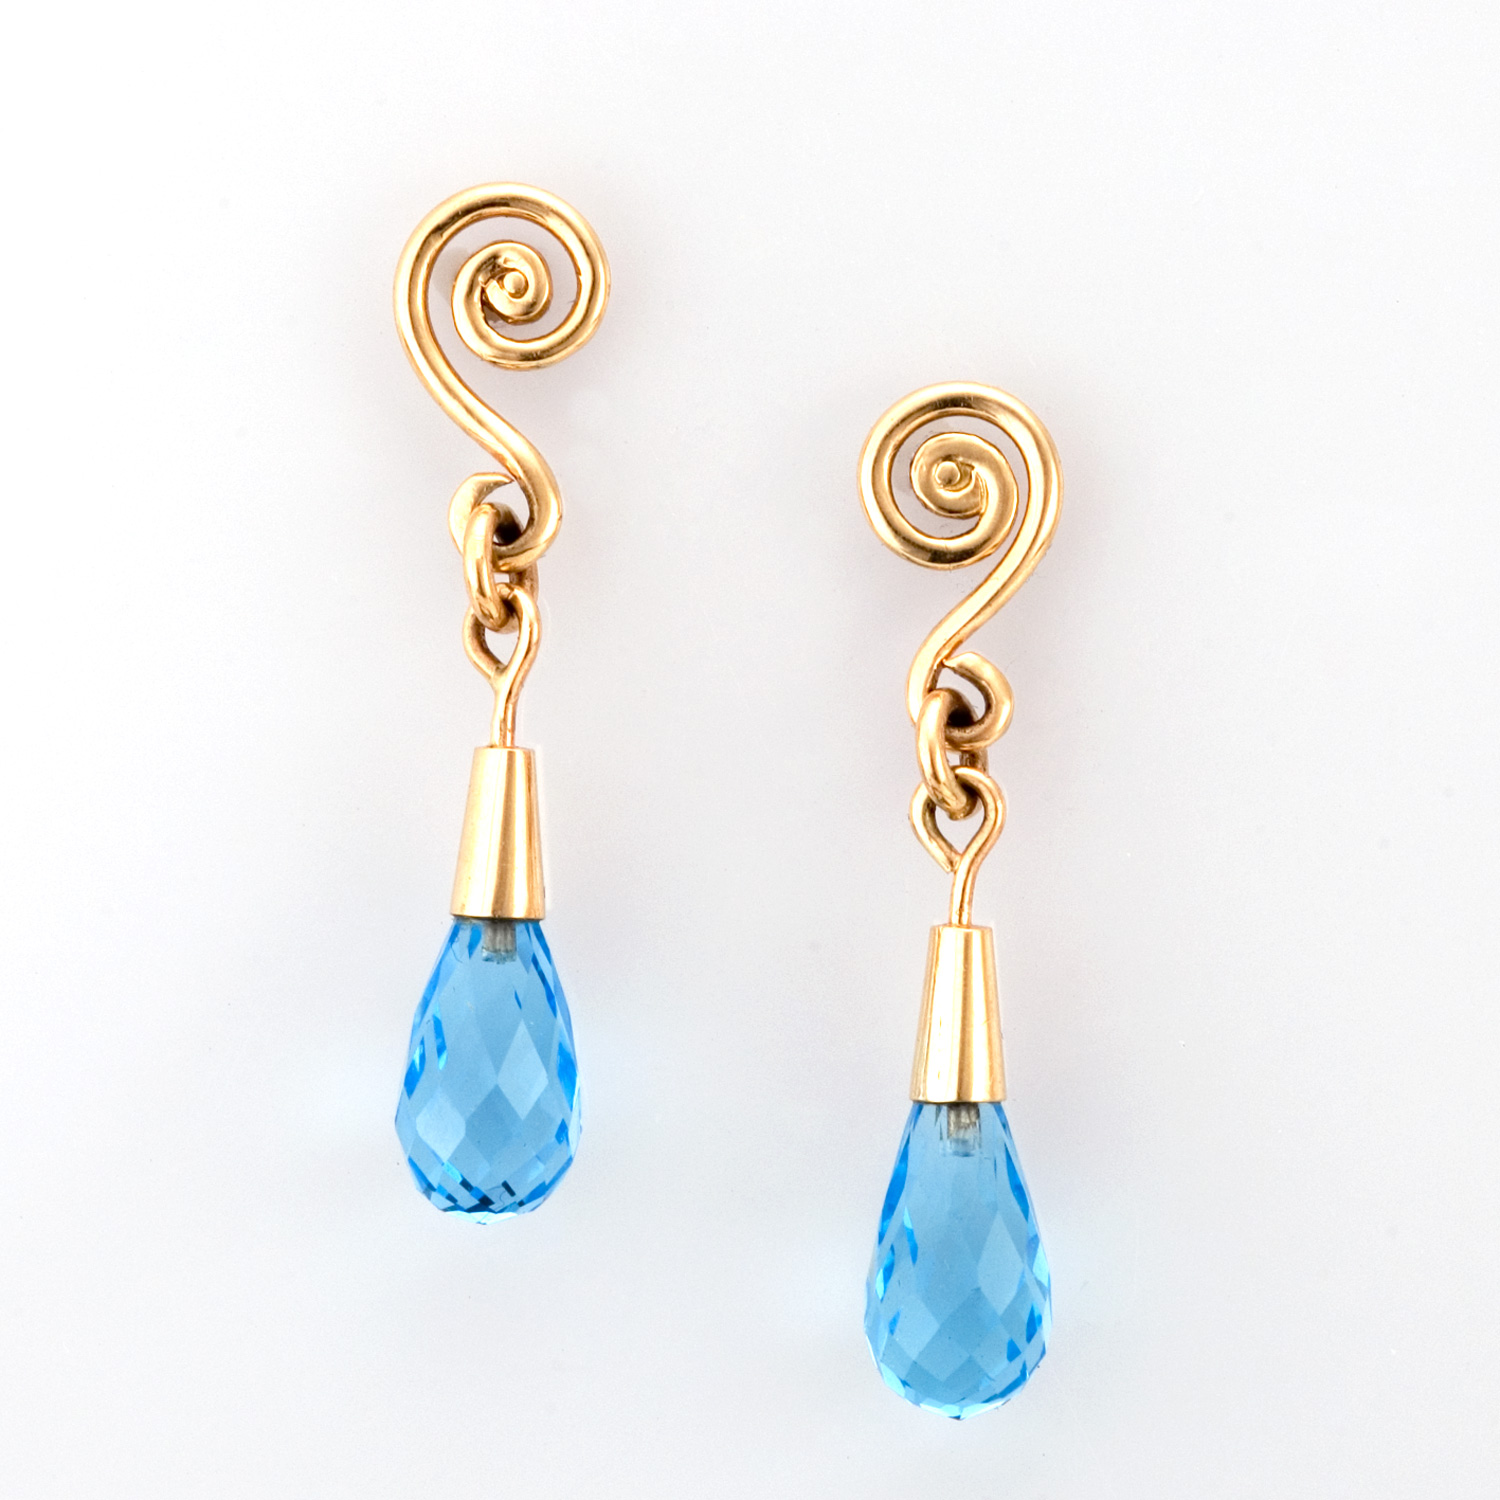 Fiddlehead Drop Earrings in 18k gold with Swiss blue topaz by Tamberlaine